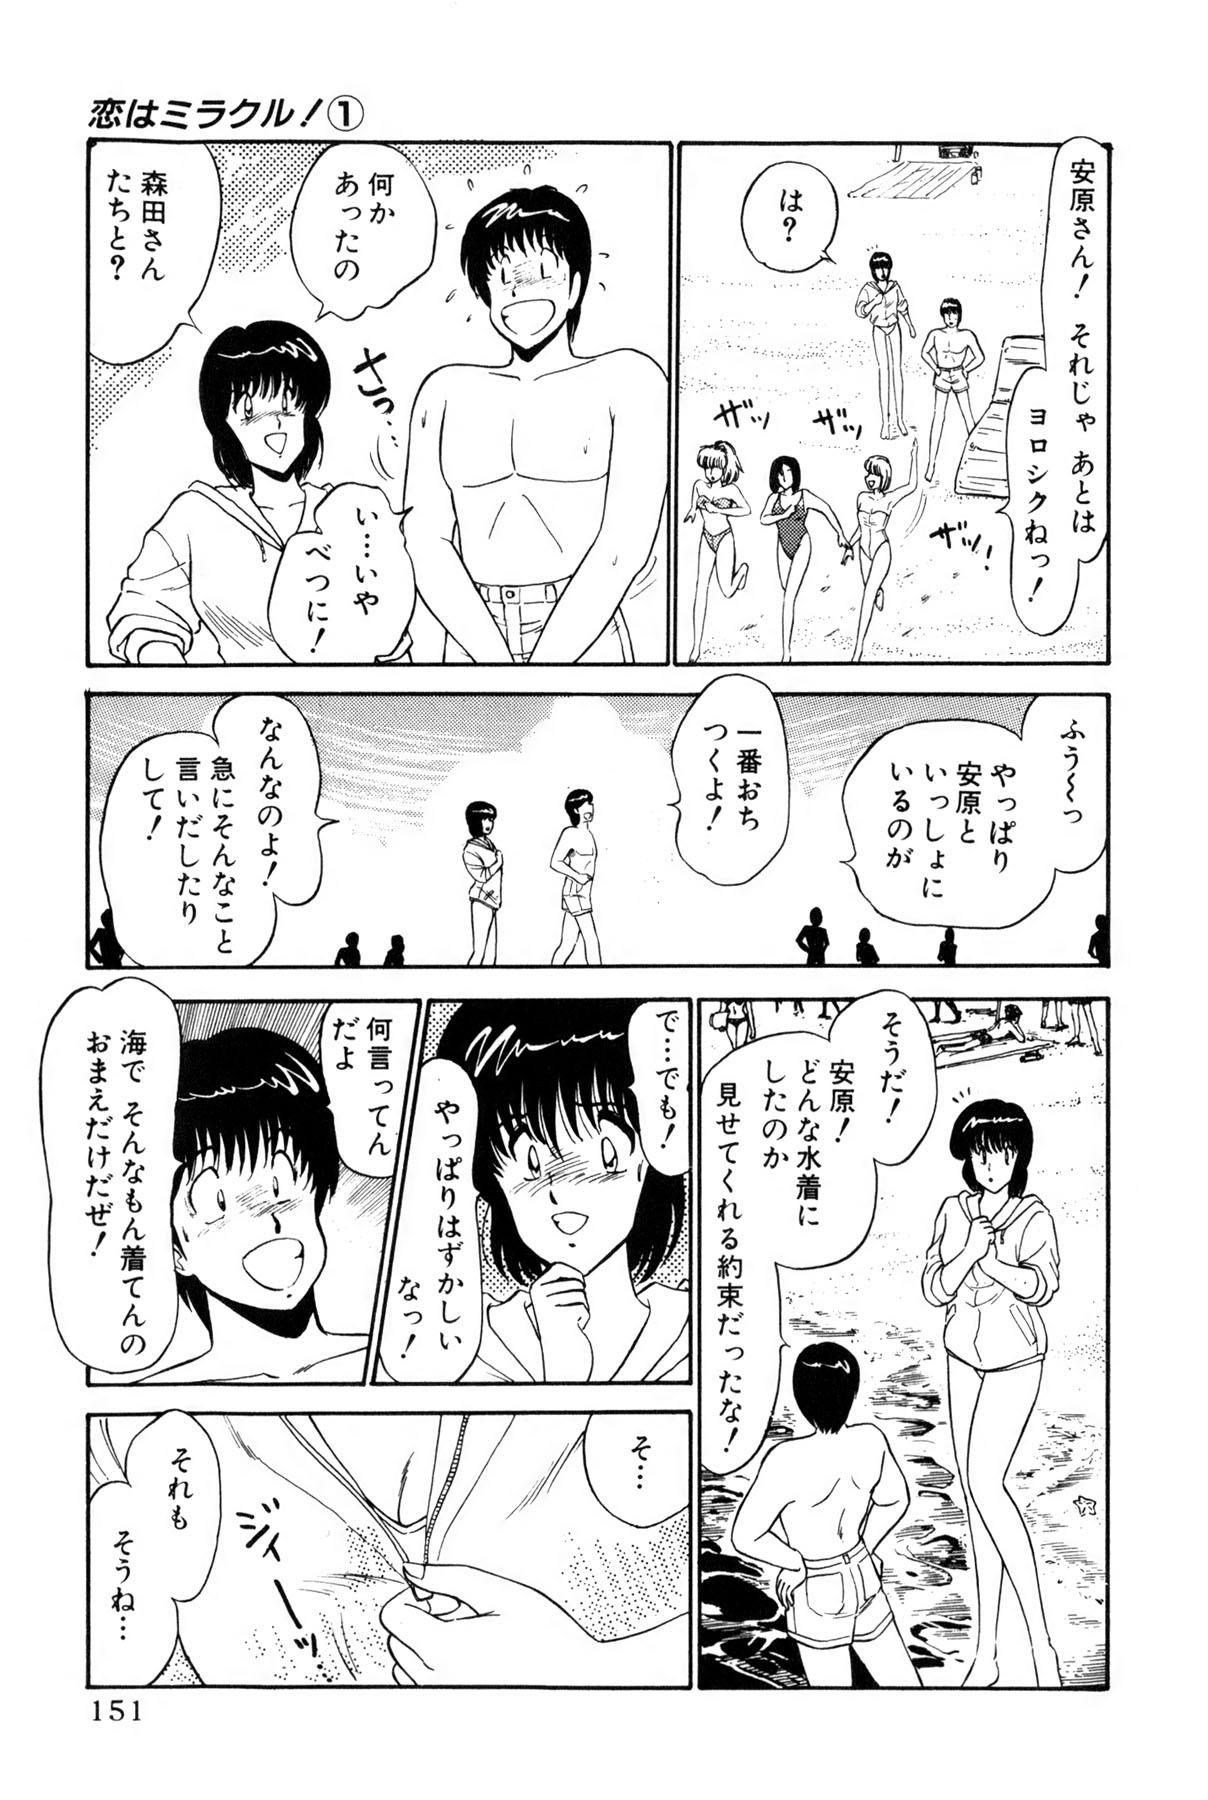 Koi wa Miracle! v01 153